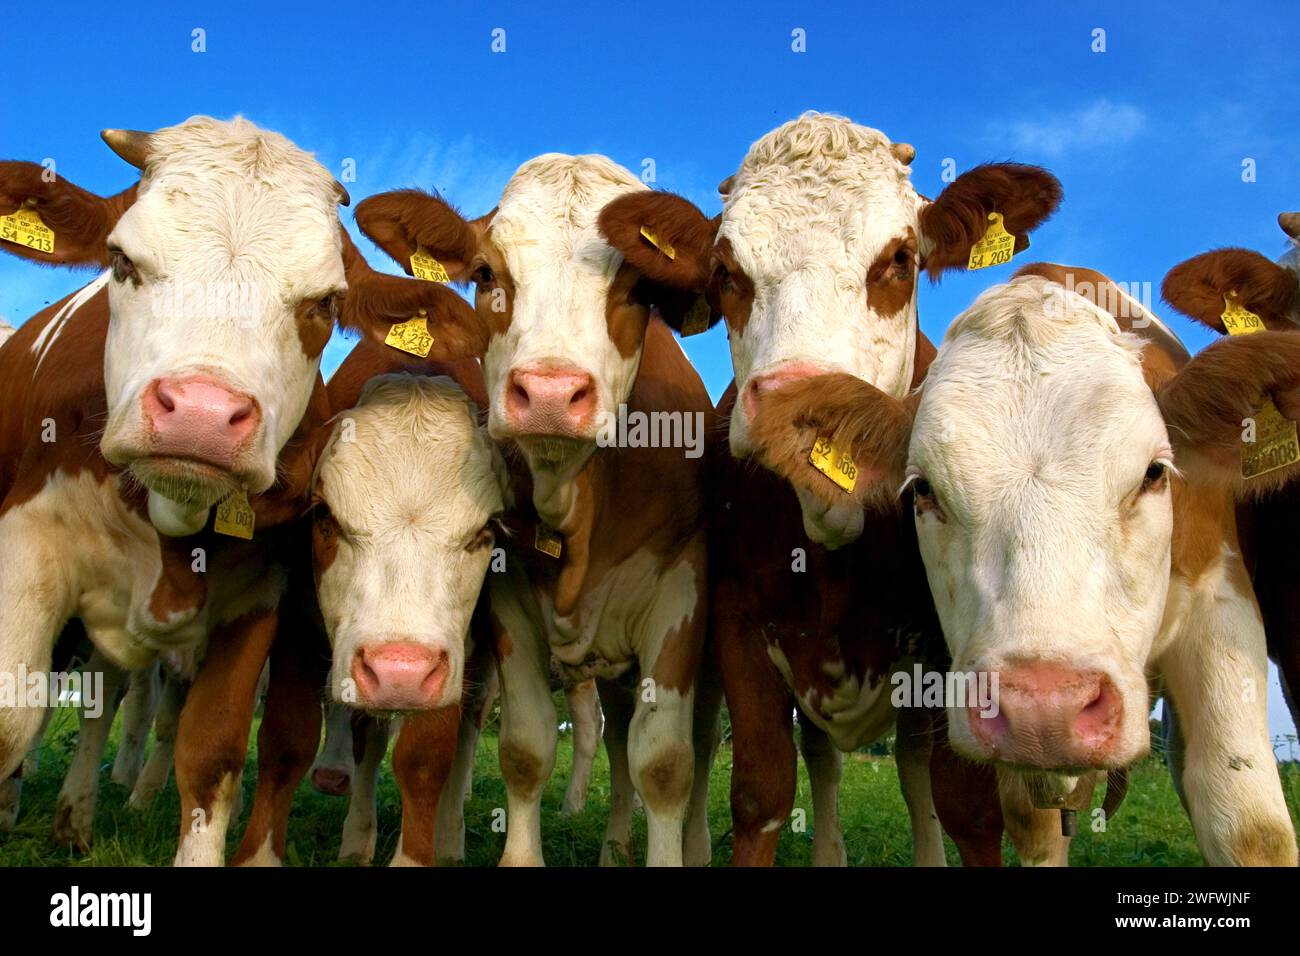 le vacche curiose sono interessate al fotografo Foto Stock